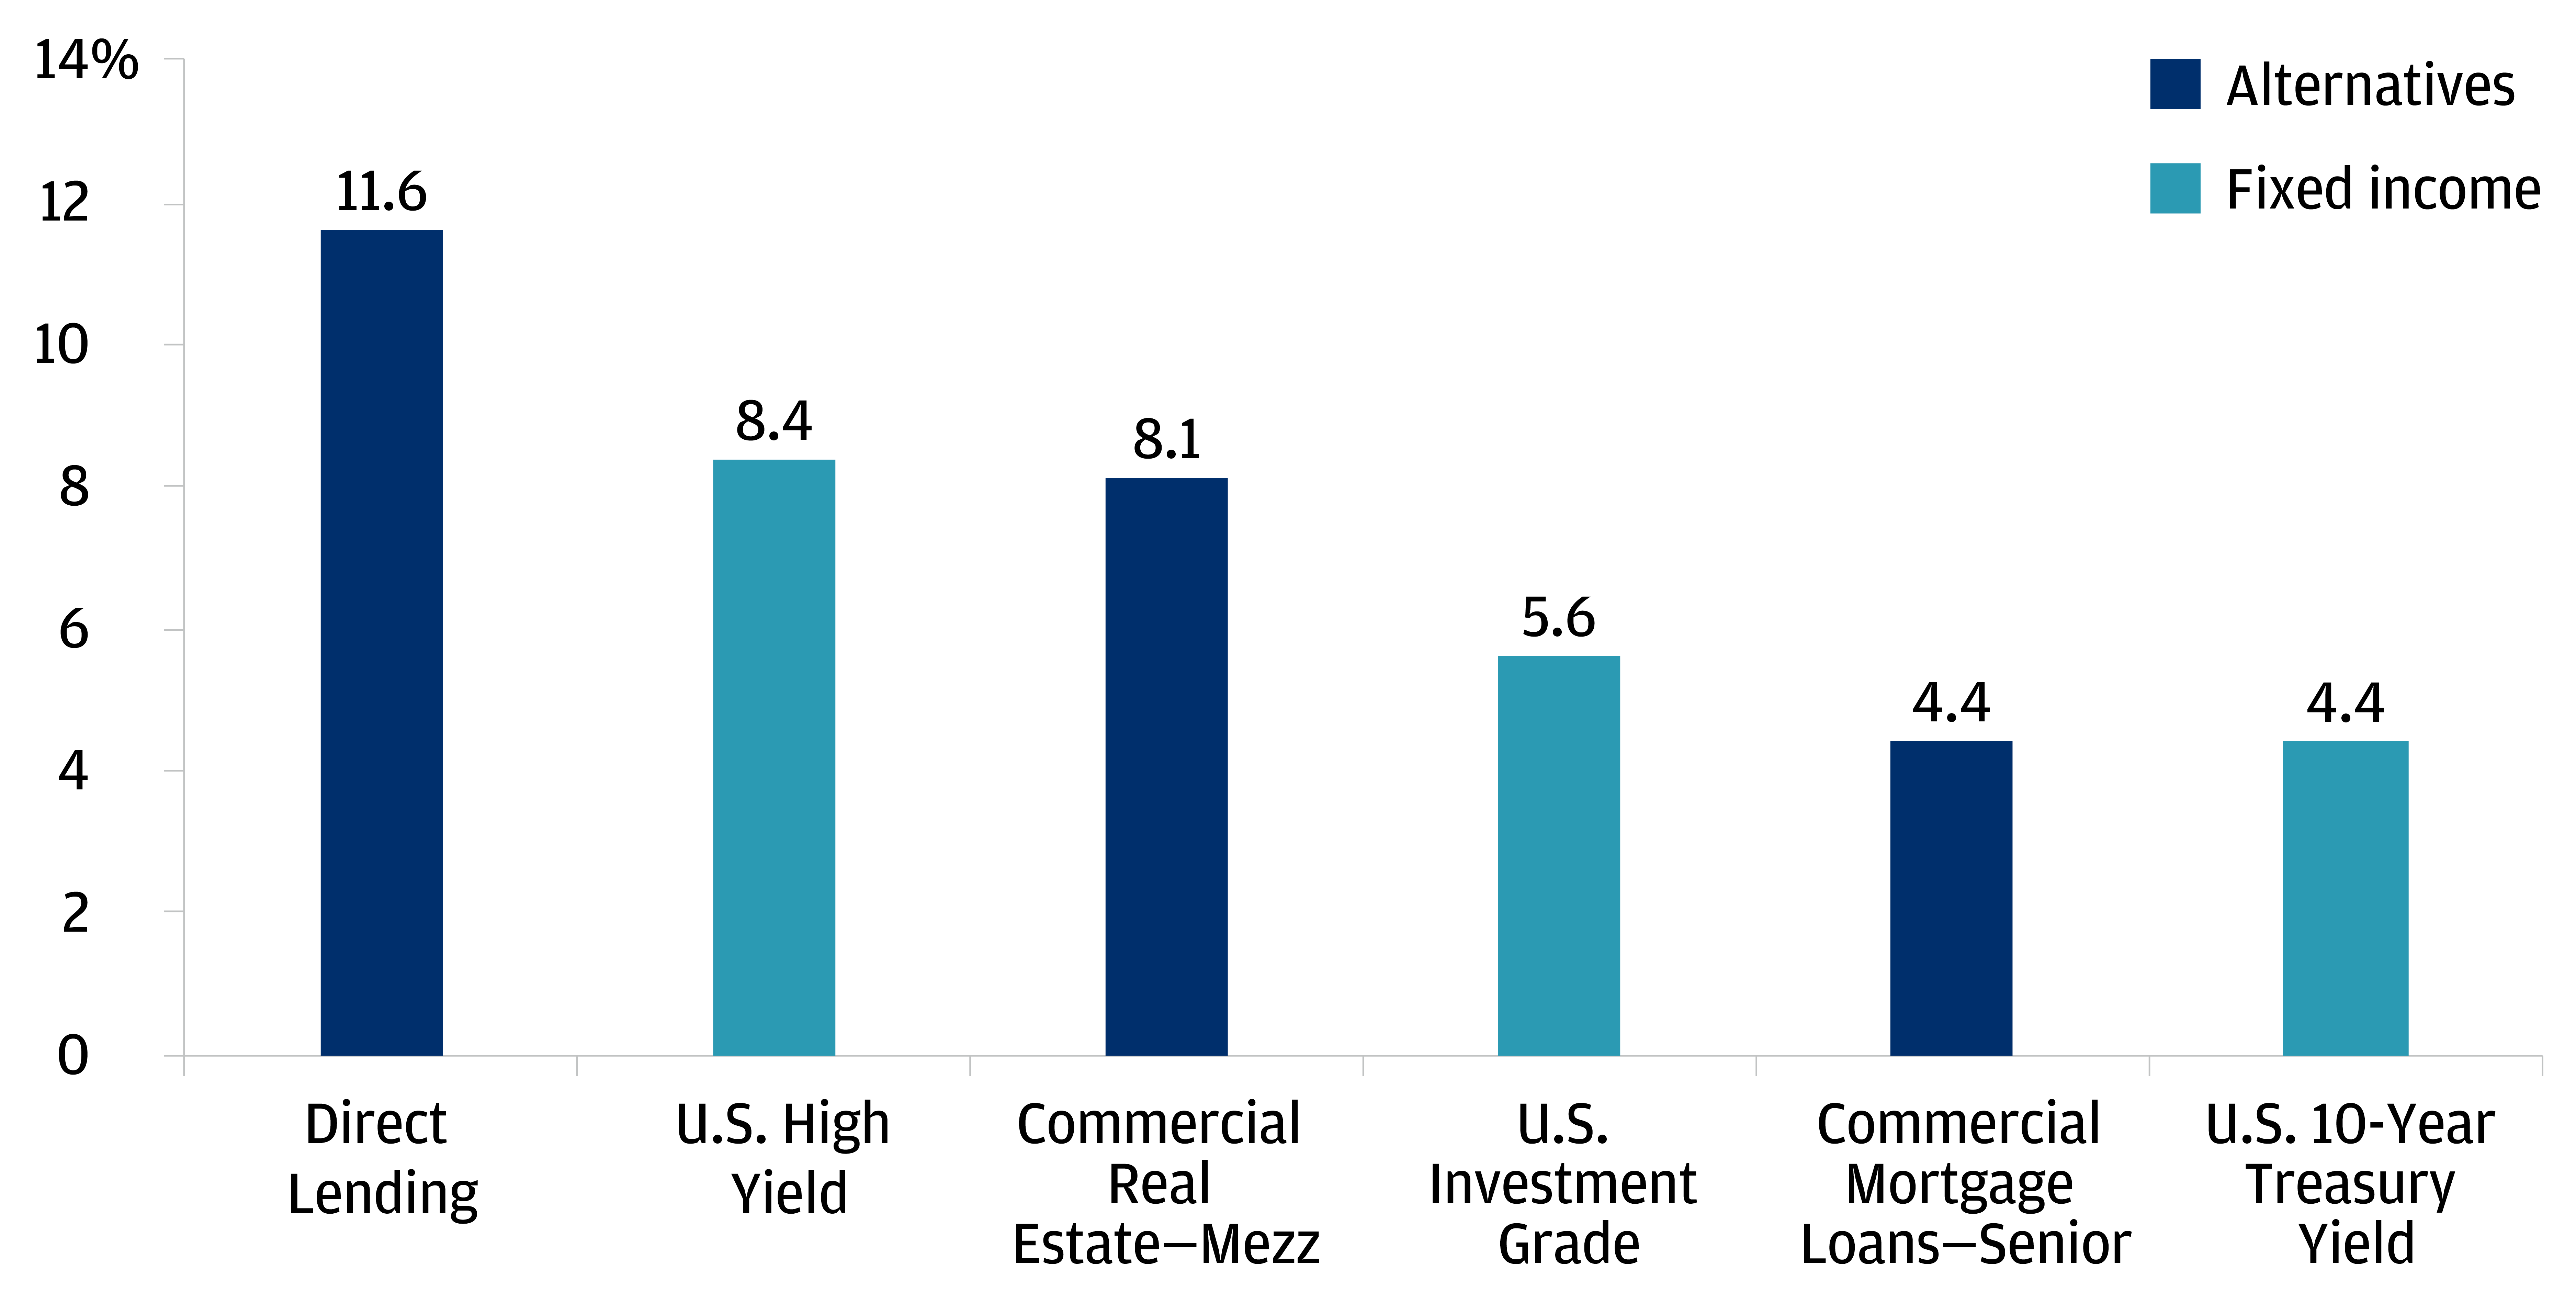 Bar graph showing asset class yield alternatives